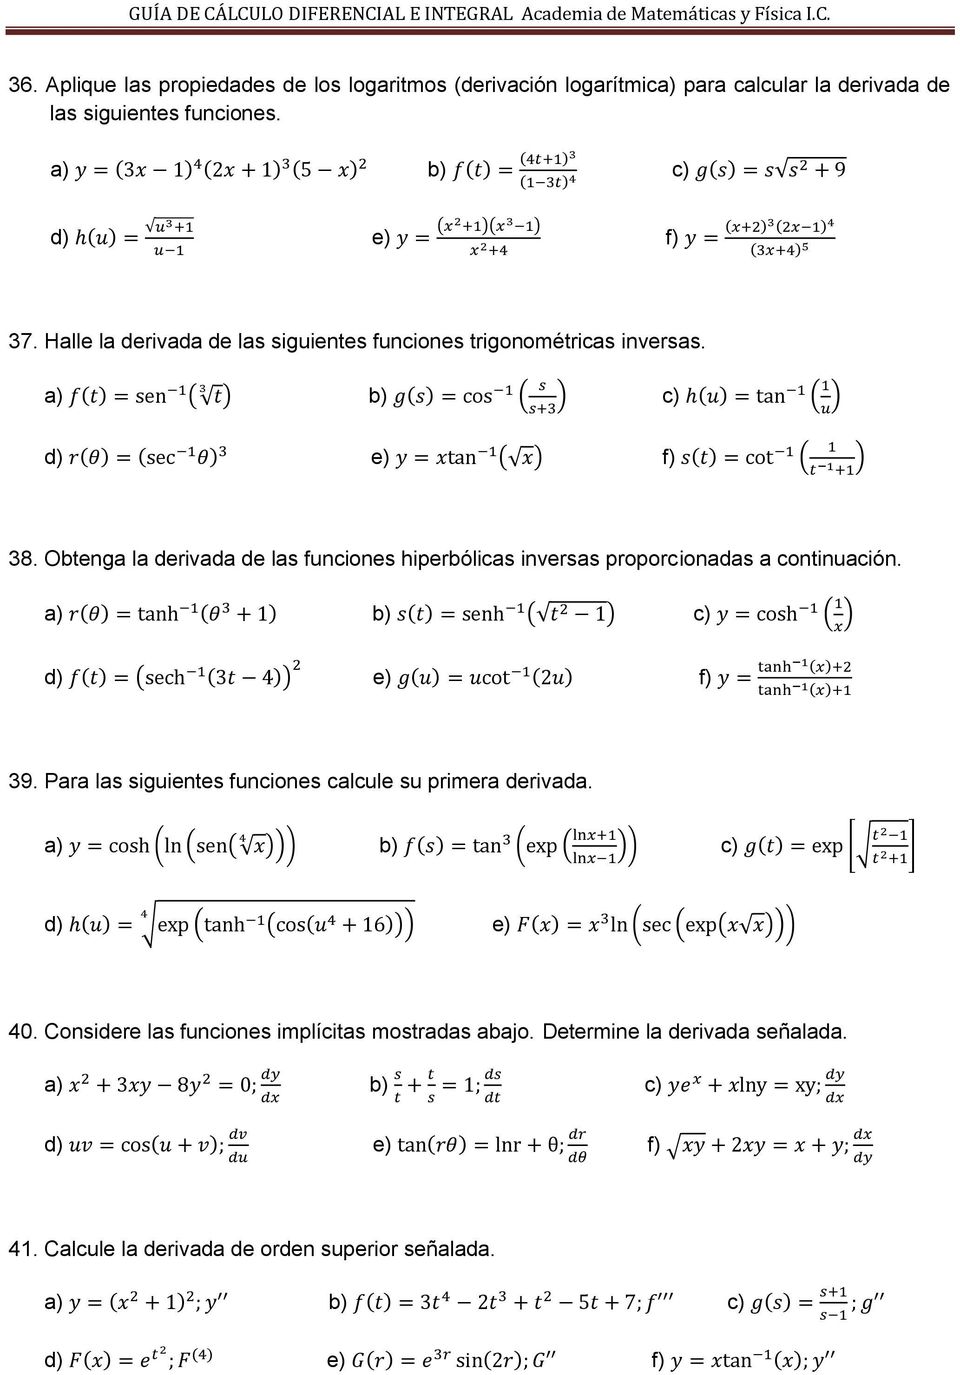 Obtenga la derivada de las funciones hiperbólicas inversas proporcionadas a continuación. 39.